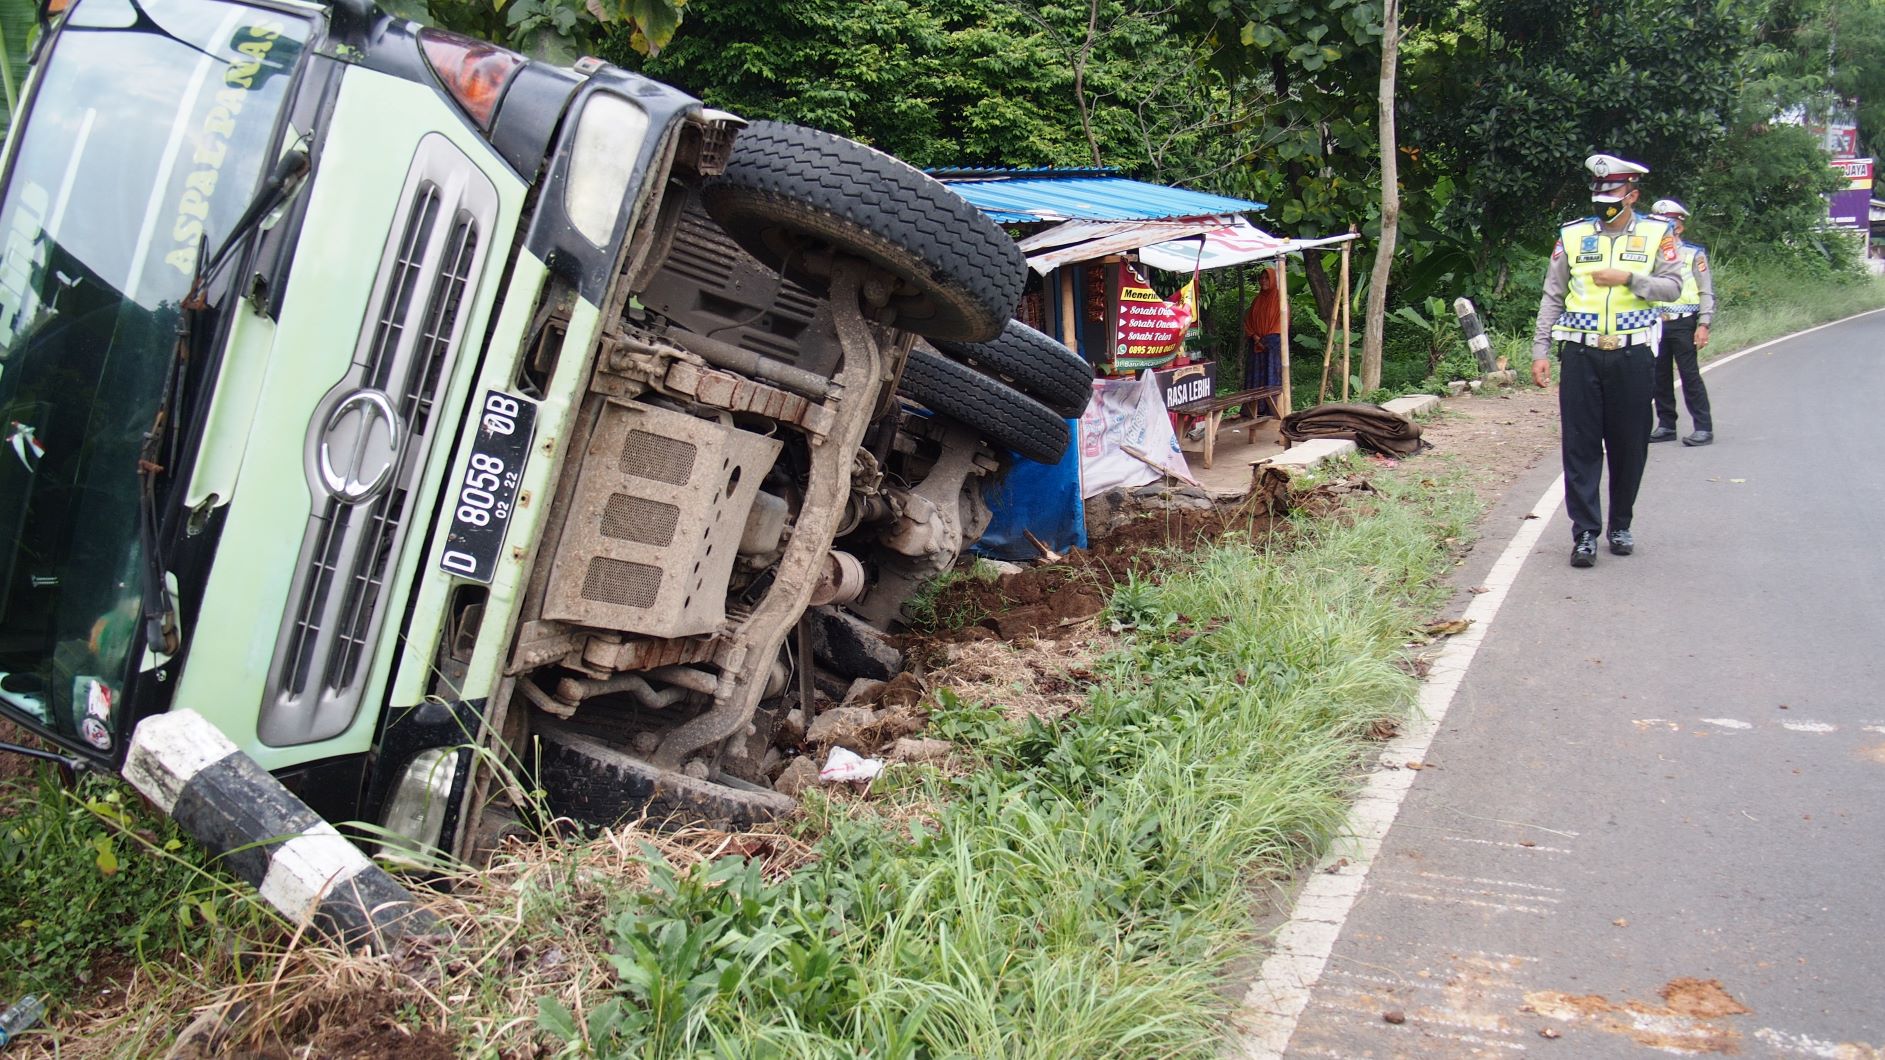 Ditinggal Beli Rokok, Dump Truck Nyelonong Nyaris Tabrak Warung